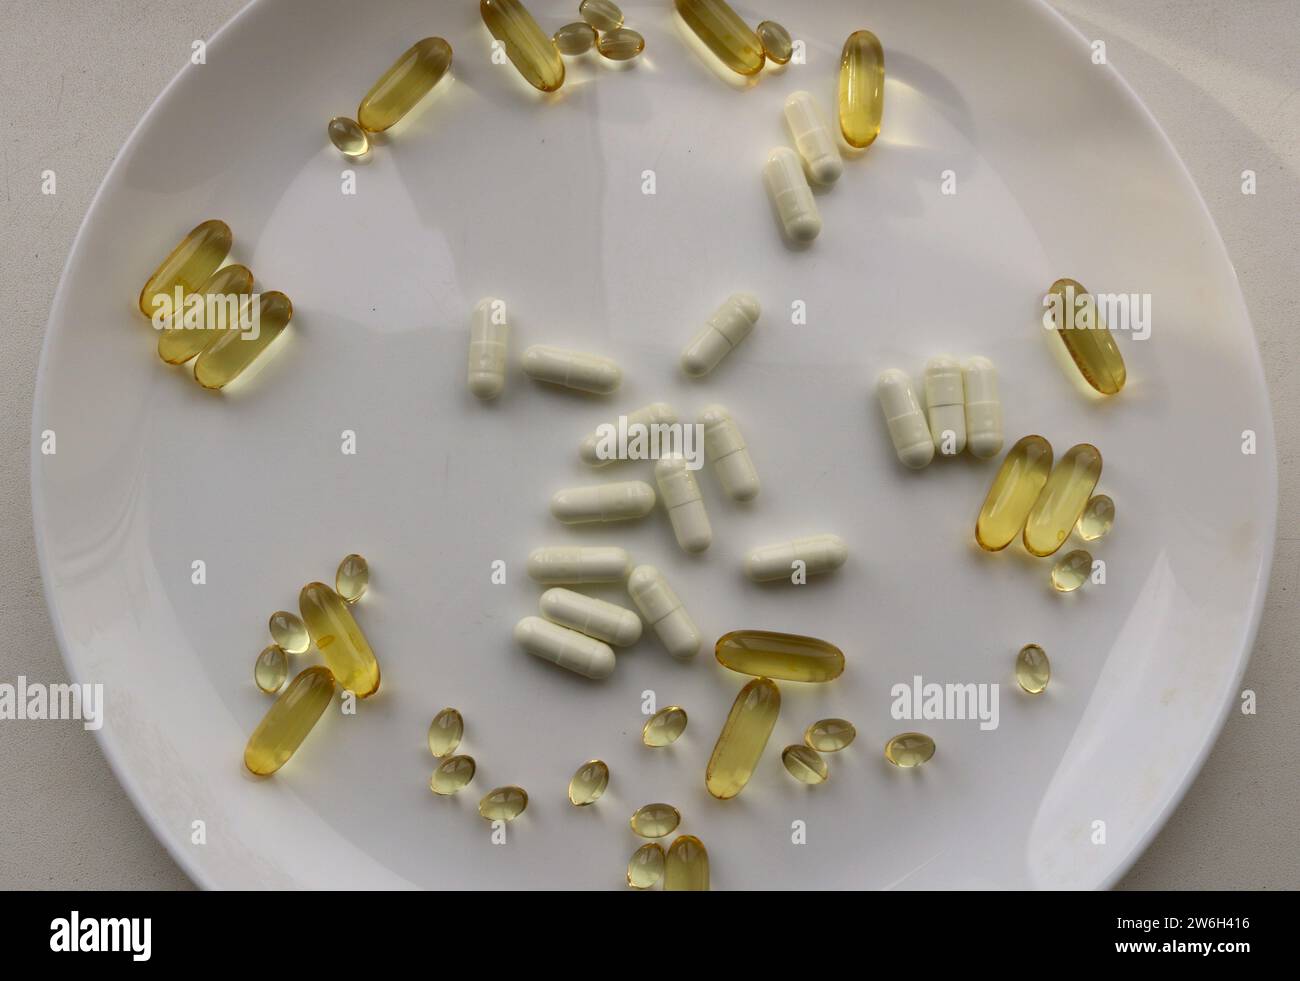 un grande piatto bianco con una dispersione di capsule bianche e dorate con vitamine, un integratore alimentare biologico sotto forma di complesso di vitamine Foto Stock